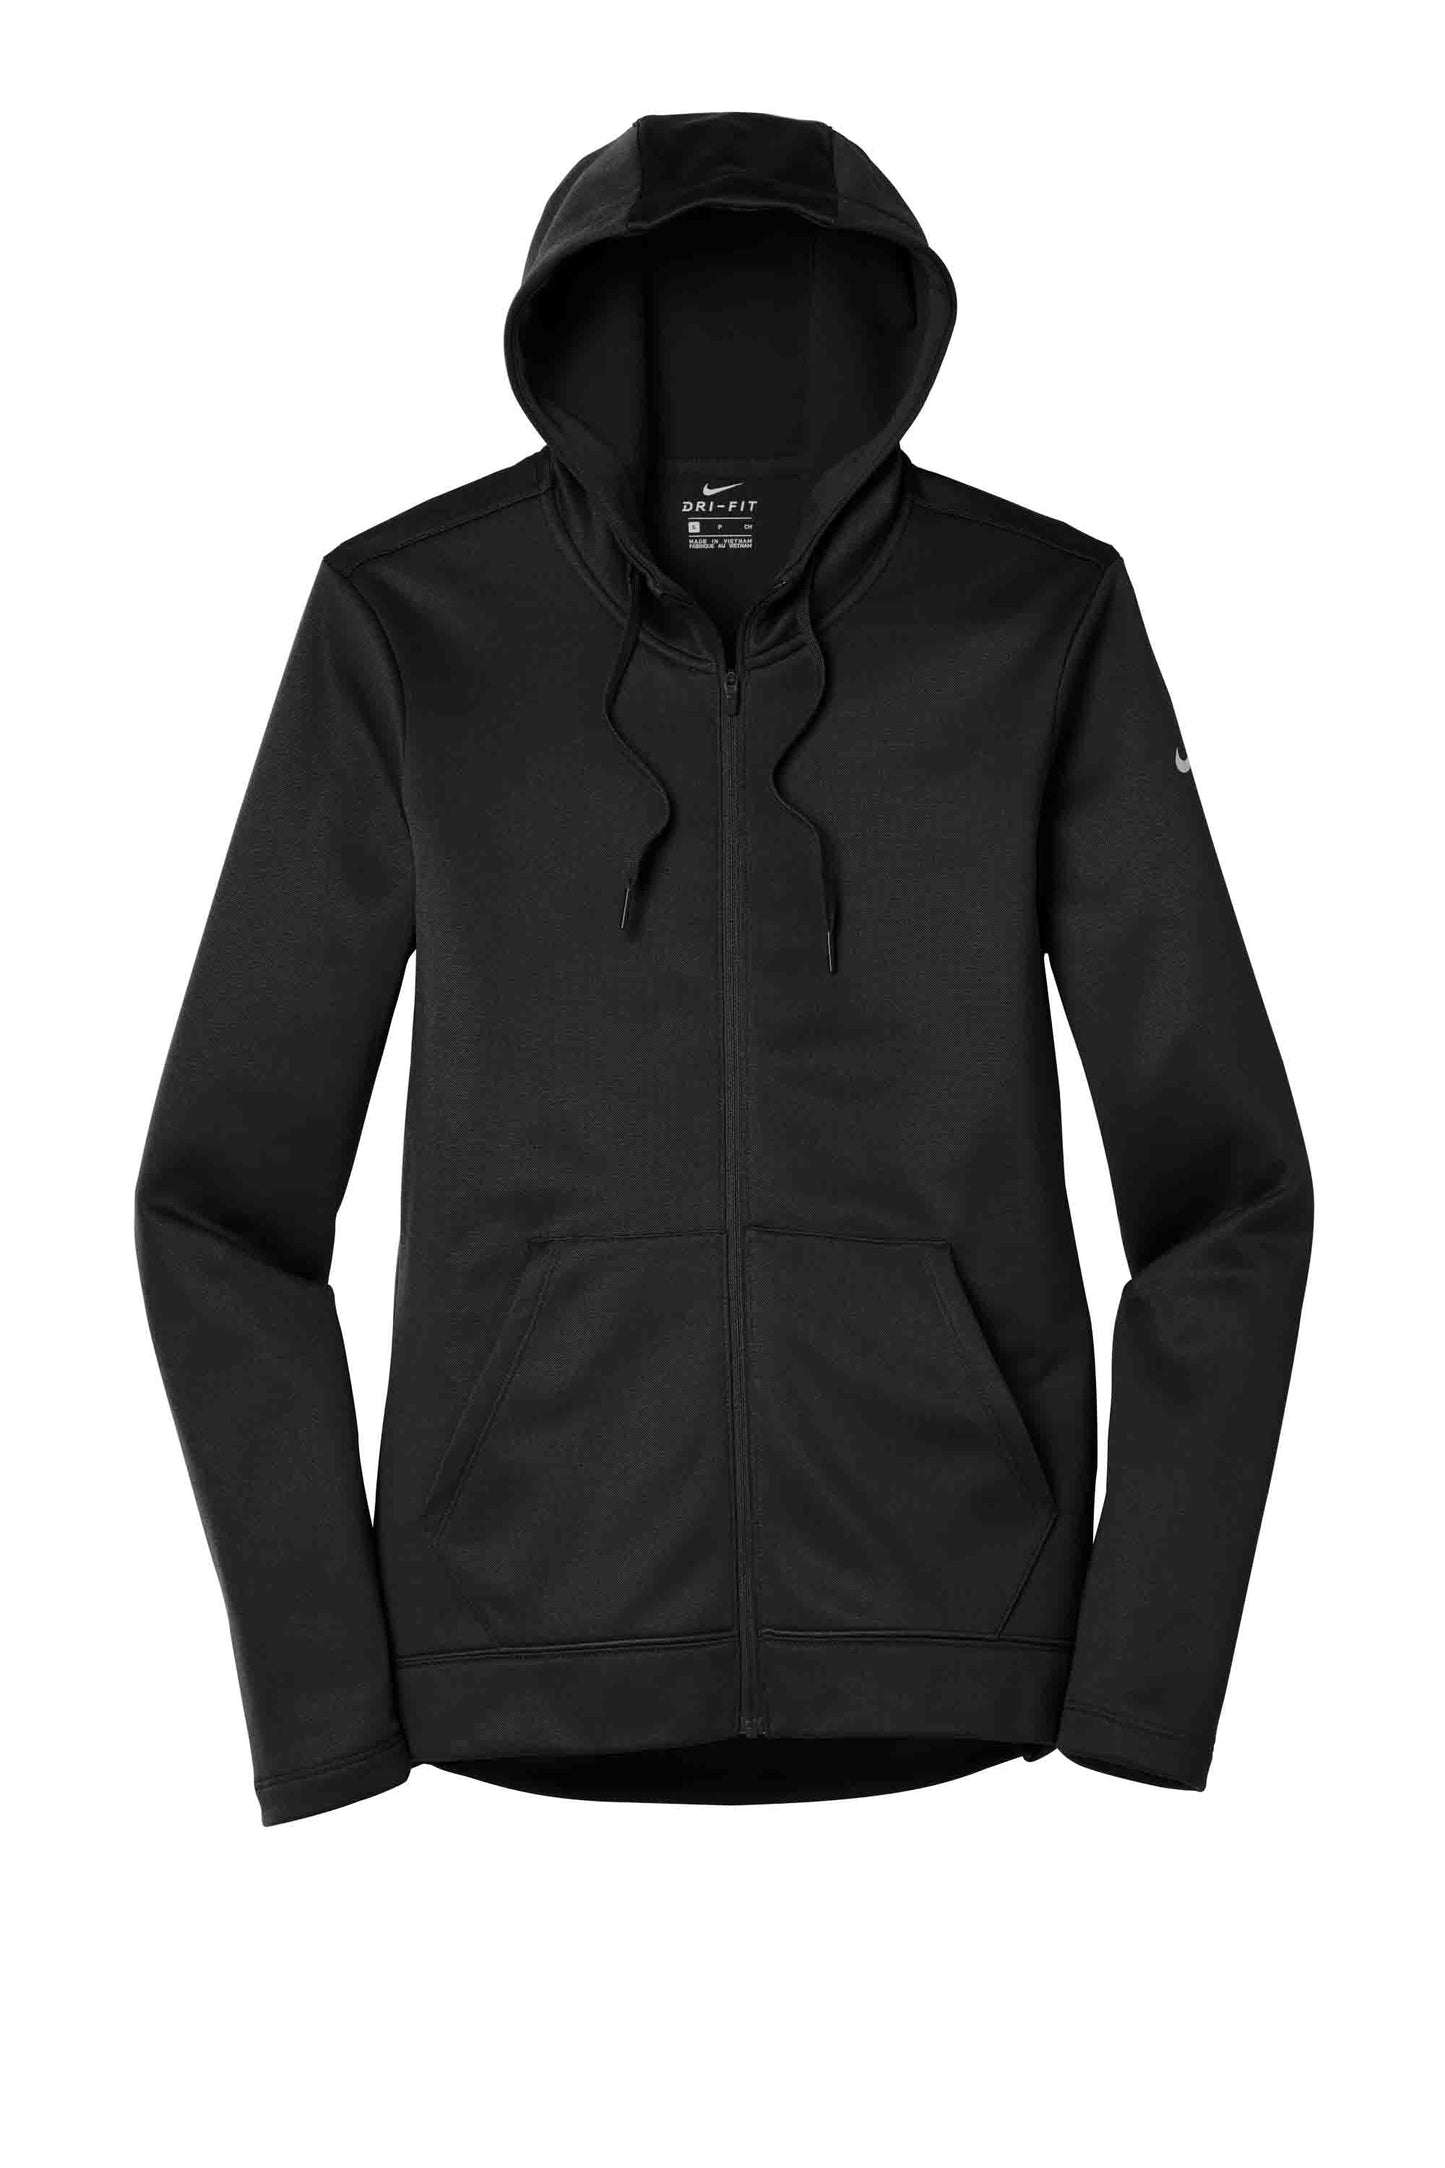 Nike Ladies Dri-FIT Hooded Zip Sweatshirt